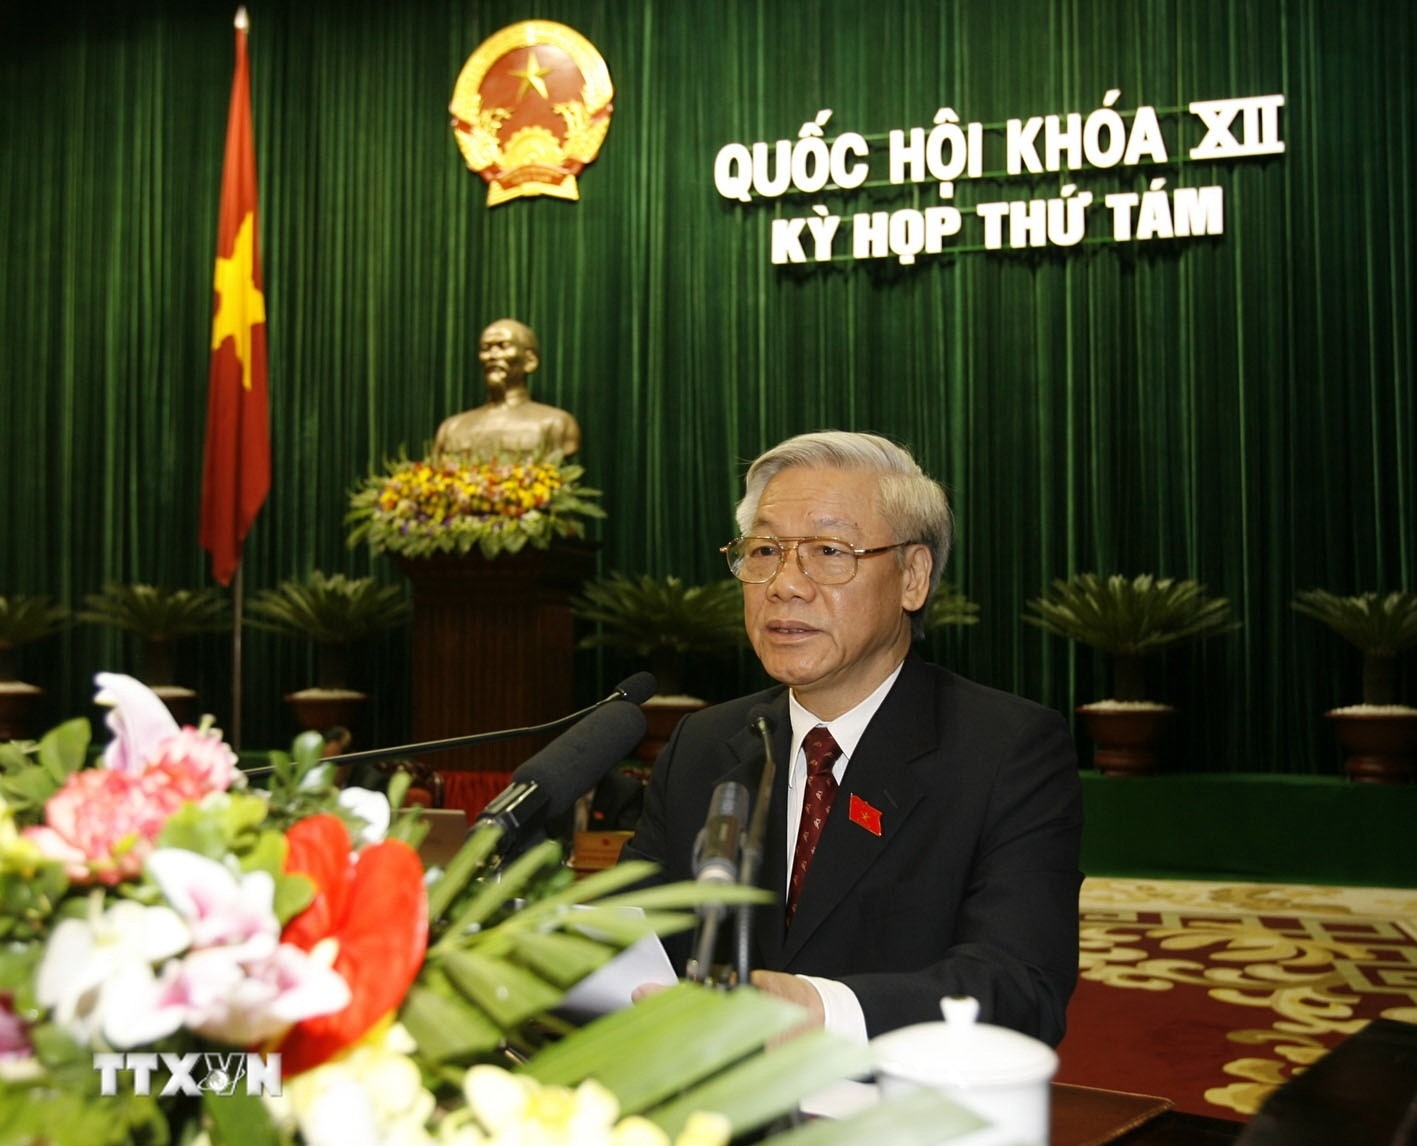 Tổng Bí thư Nguyễn Phú Trọng và những dấu ấn đậm nét ở Quốc hội